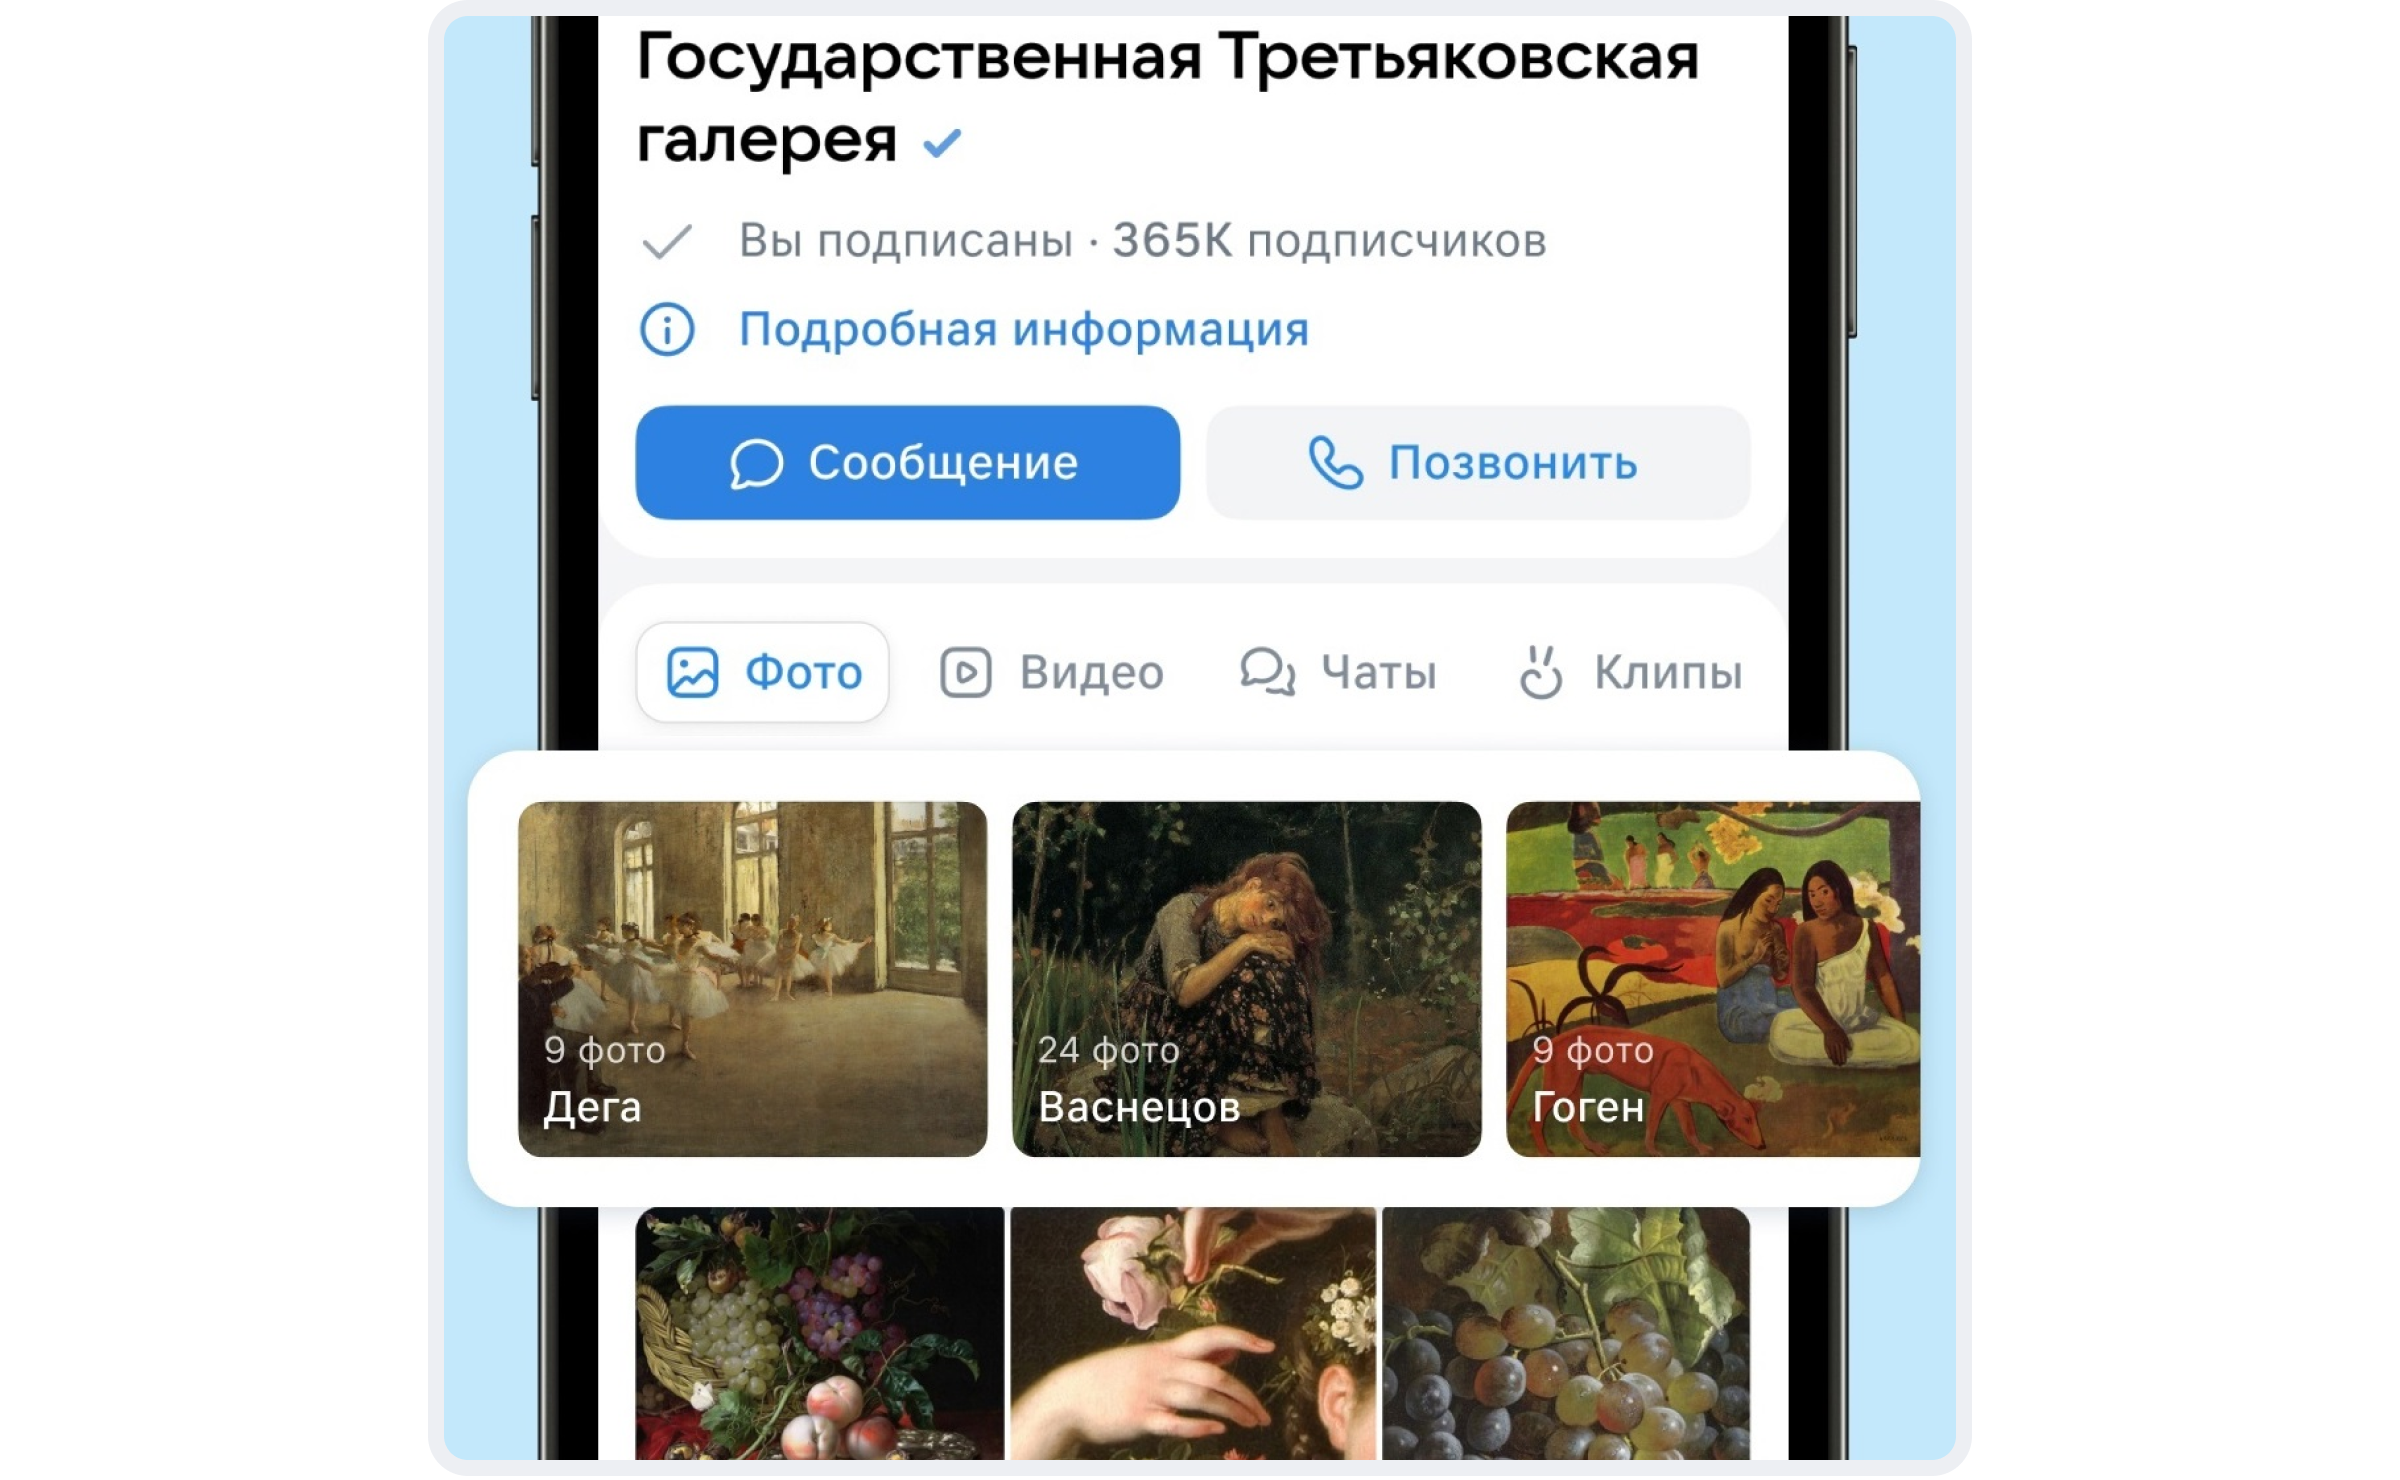 Детальная настройка витрины контента в сообществах ВКонтакте